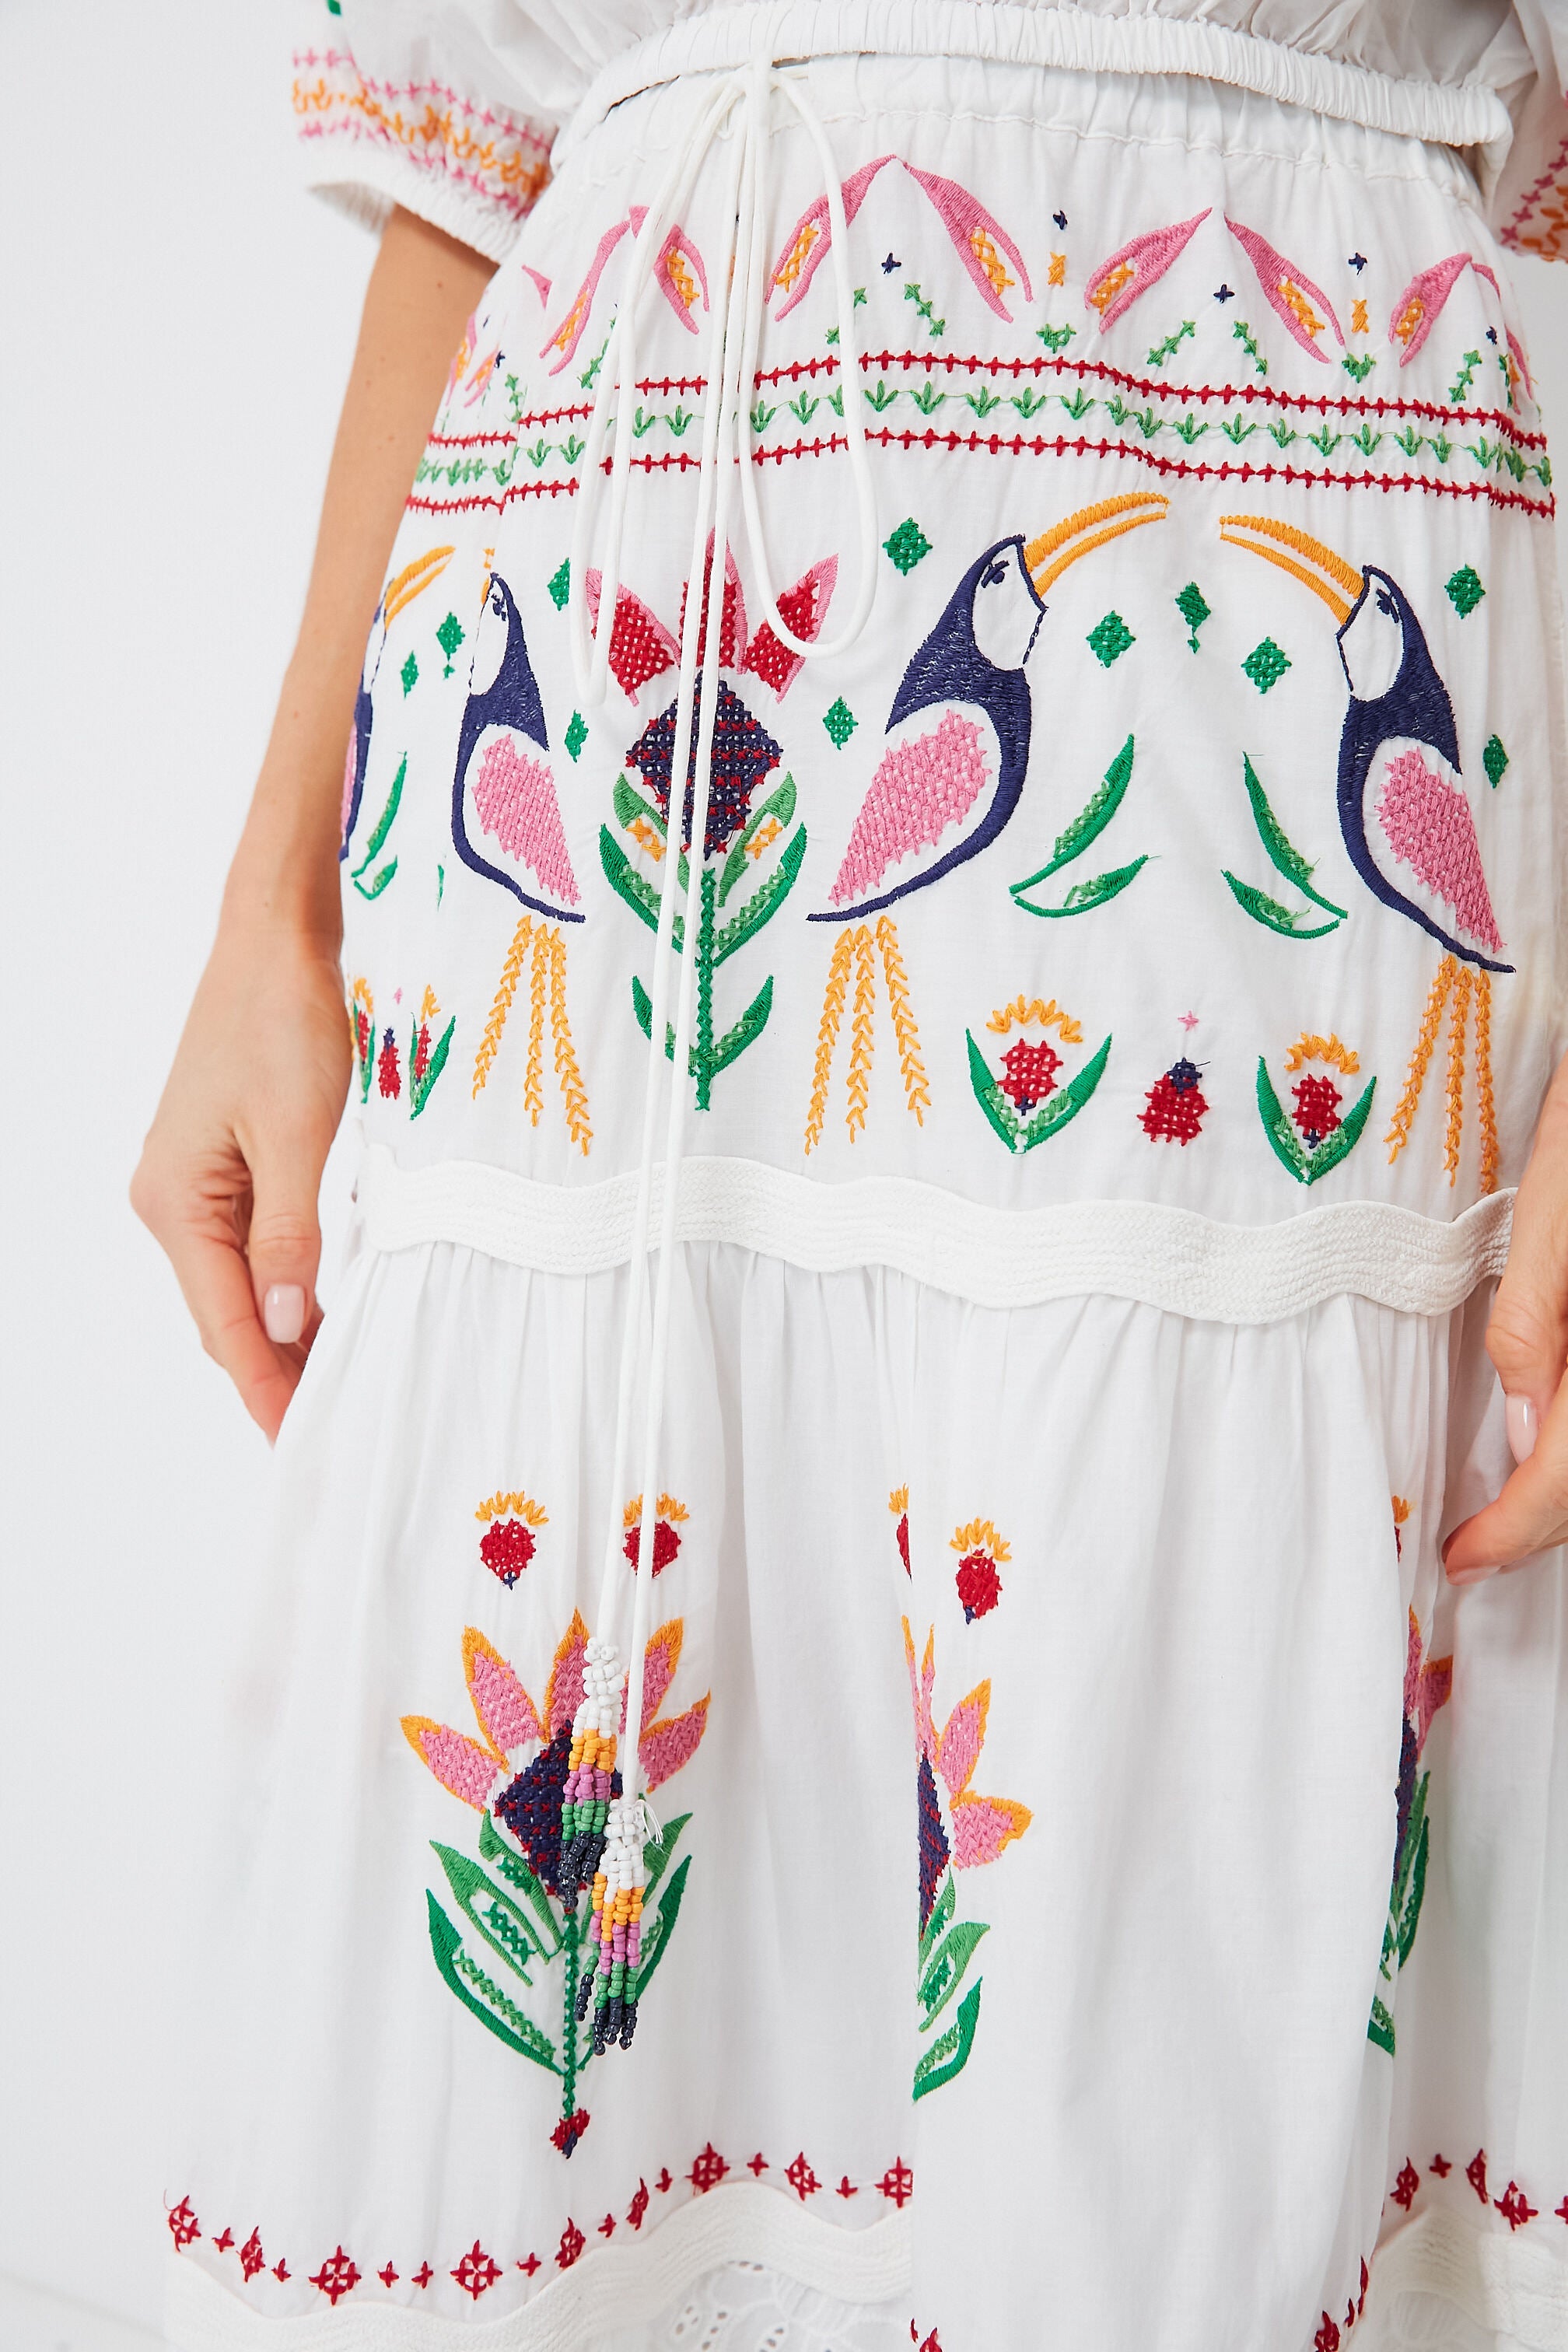 | Rio Farm Garden Embroidered Skirt Summer Maxi